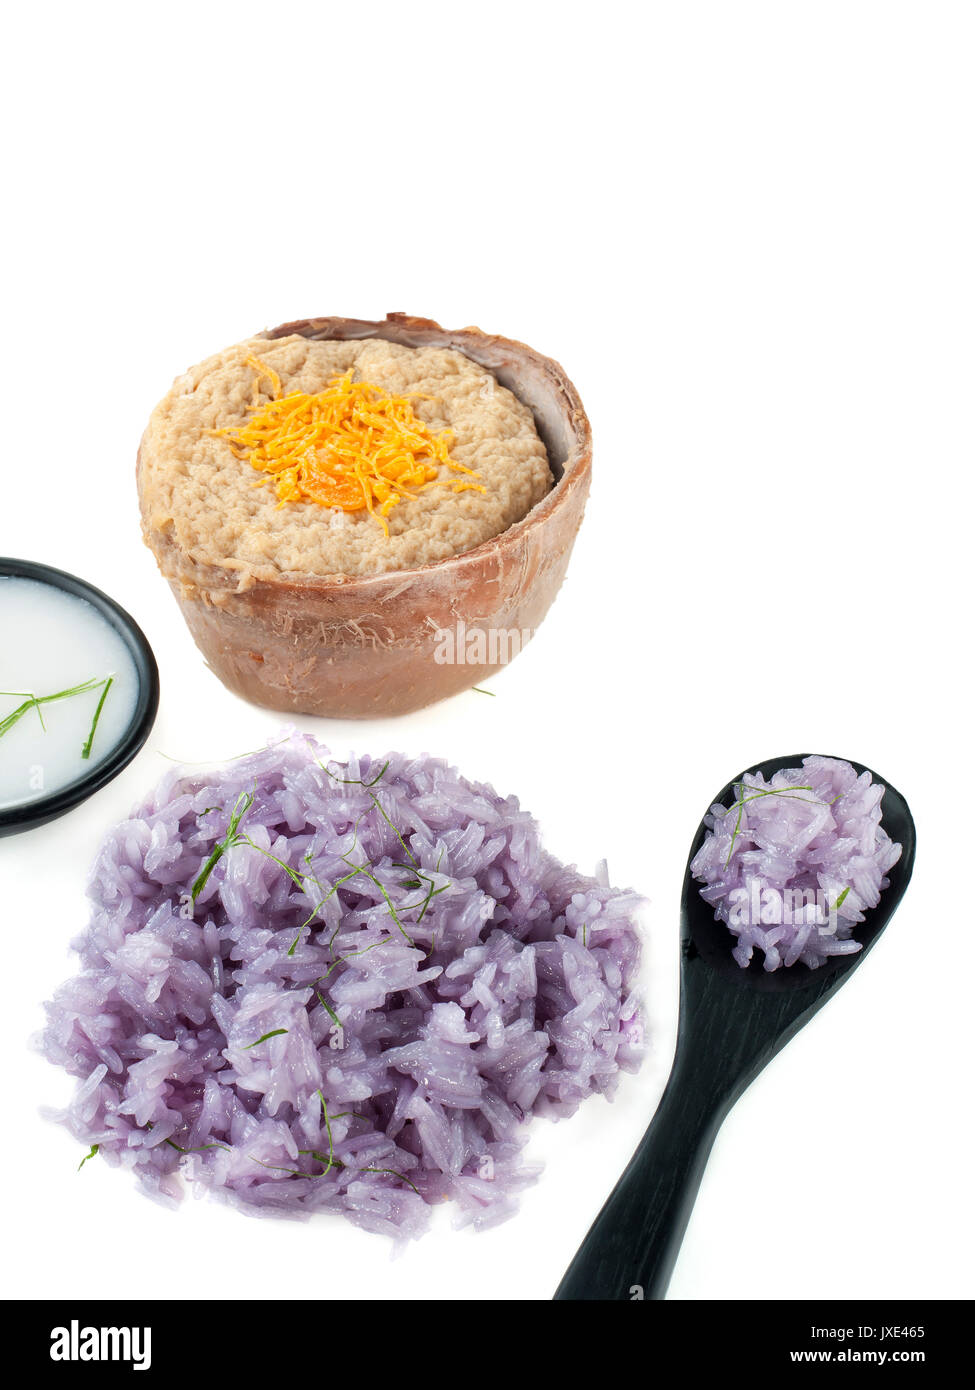 Pois bleu Thai riz gluant au lait de coco crème dessert thaï asian food styling isolated on white Banque D'Images